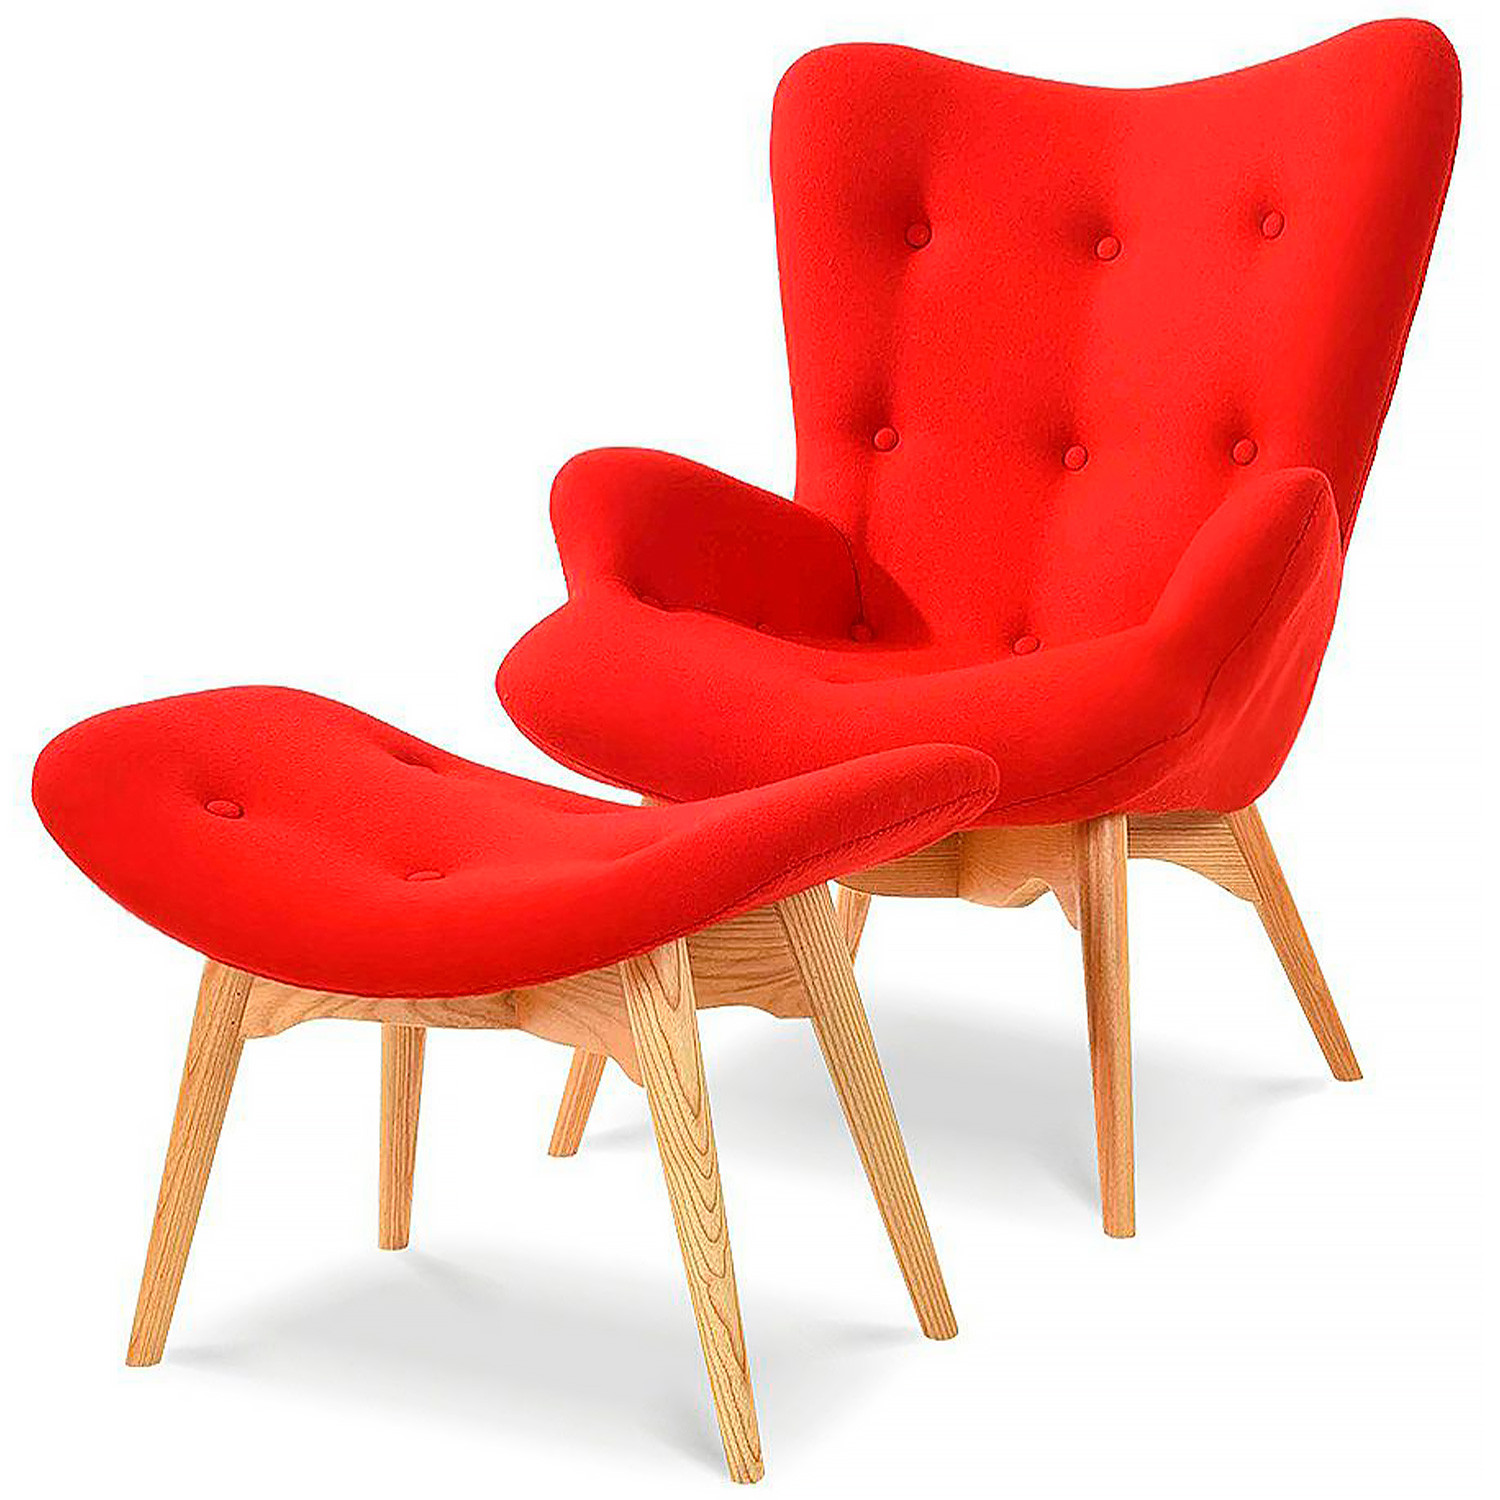 Лаунж кресла DC-917 красный / светлое дерево фото 1 — New Style of Furniture